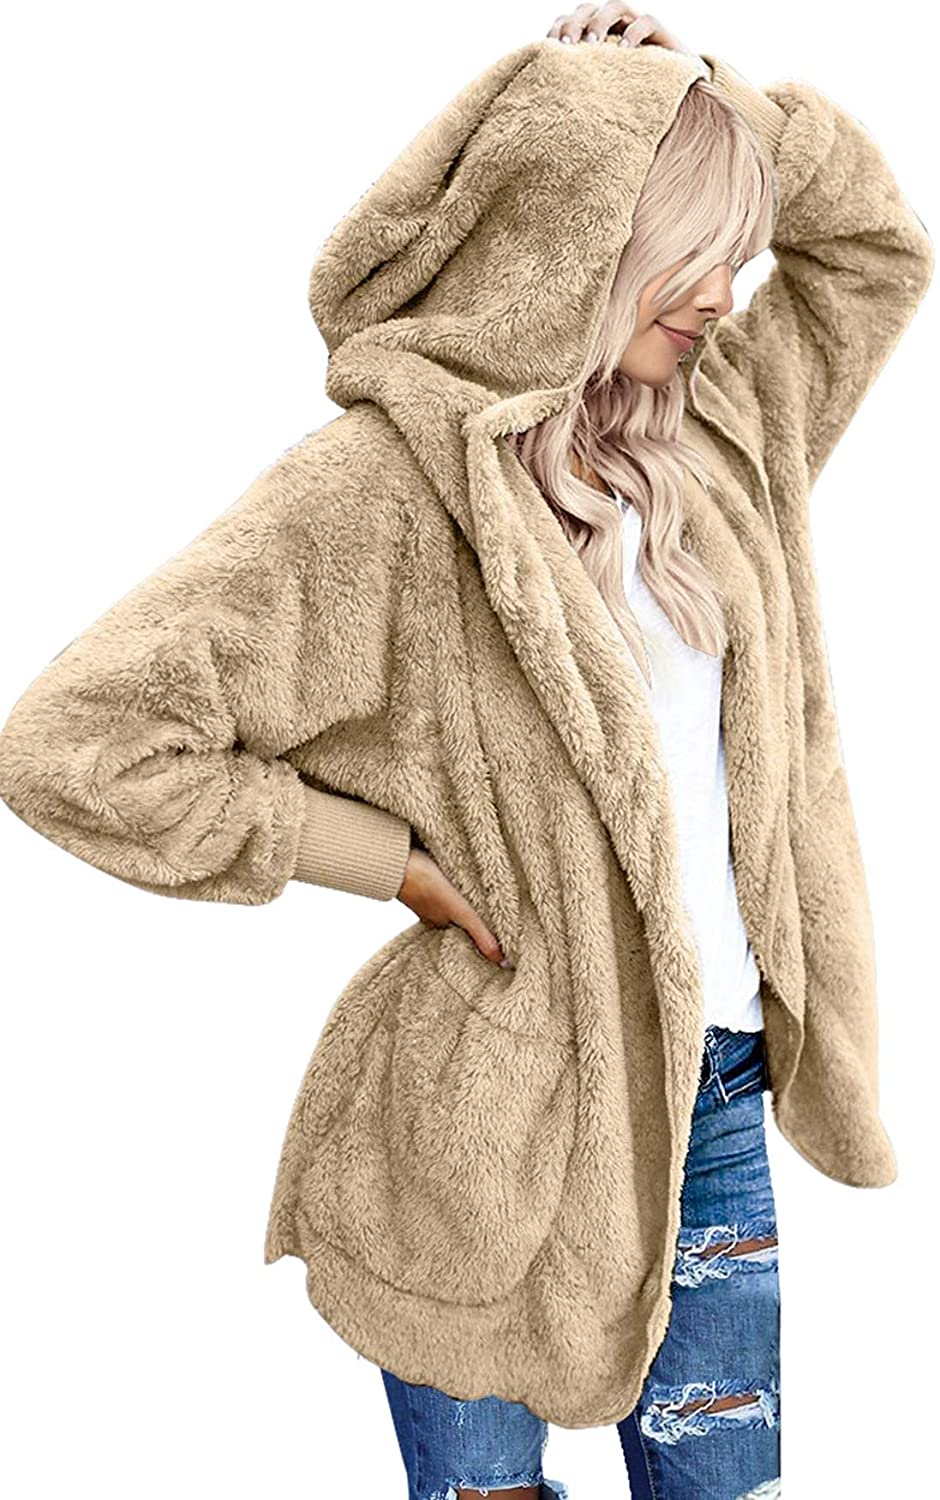 Womens Fuzzy Fleece Jacket Faux Fur Coats Hooded Open Front Cardigan Splice Winter Warm Coat Outwear with Pocket 